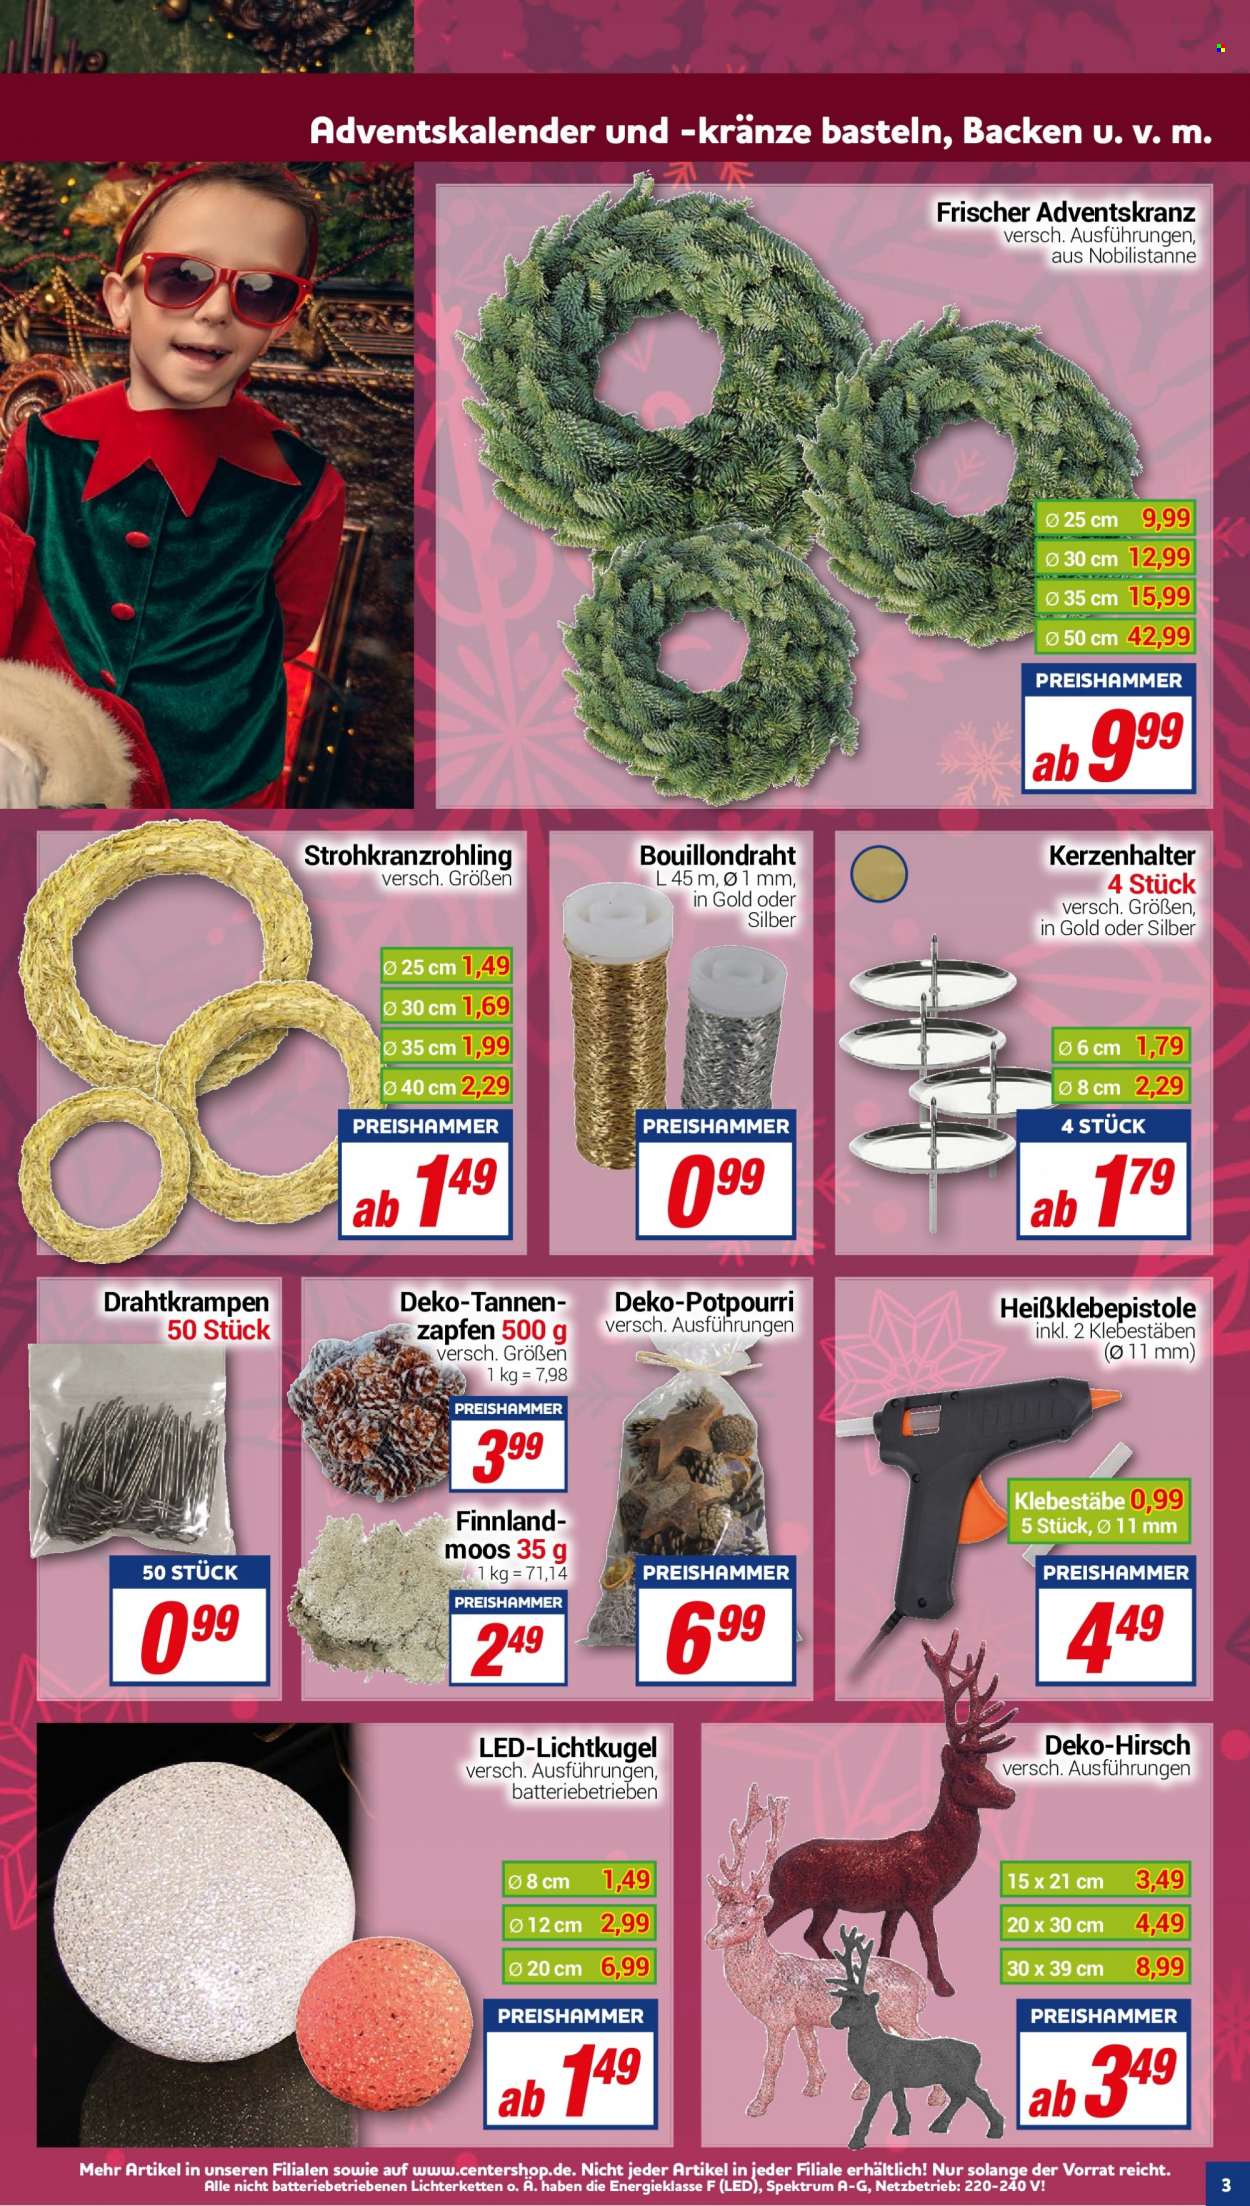 thumbnail - Prospekte CENTERSHOP - Produkte in Aktion - Adventskalender, Heißklebepistole, Adventskranz, Potpourri, Kerzenhalter. Seite 3.